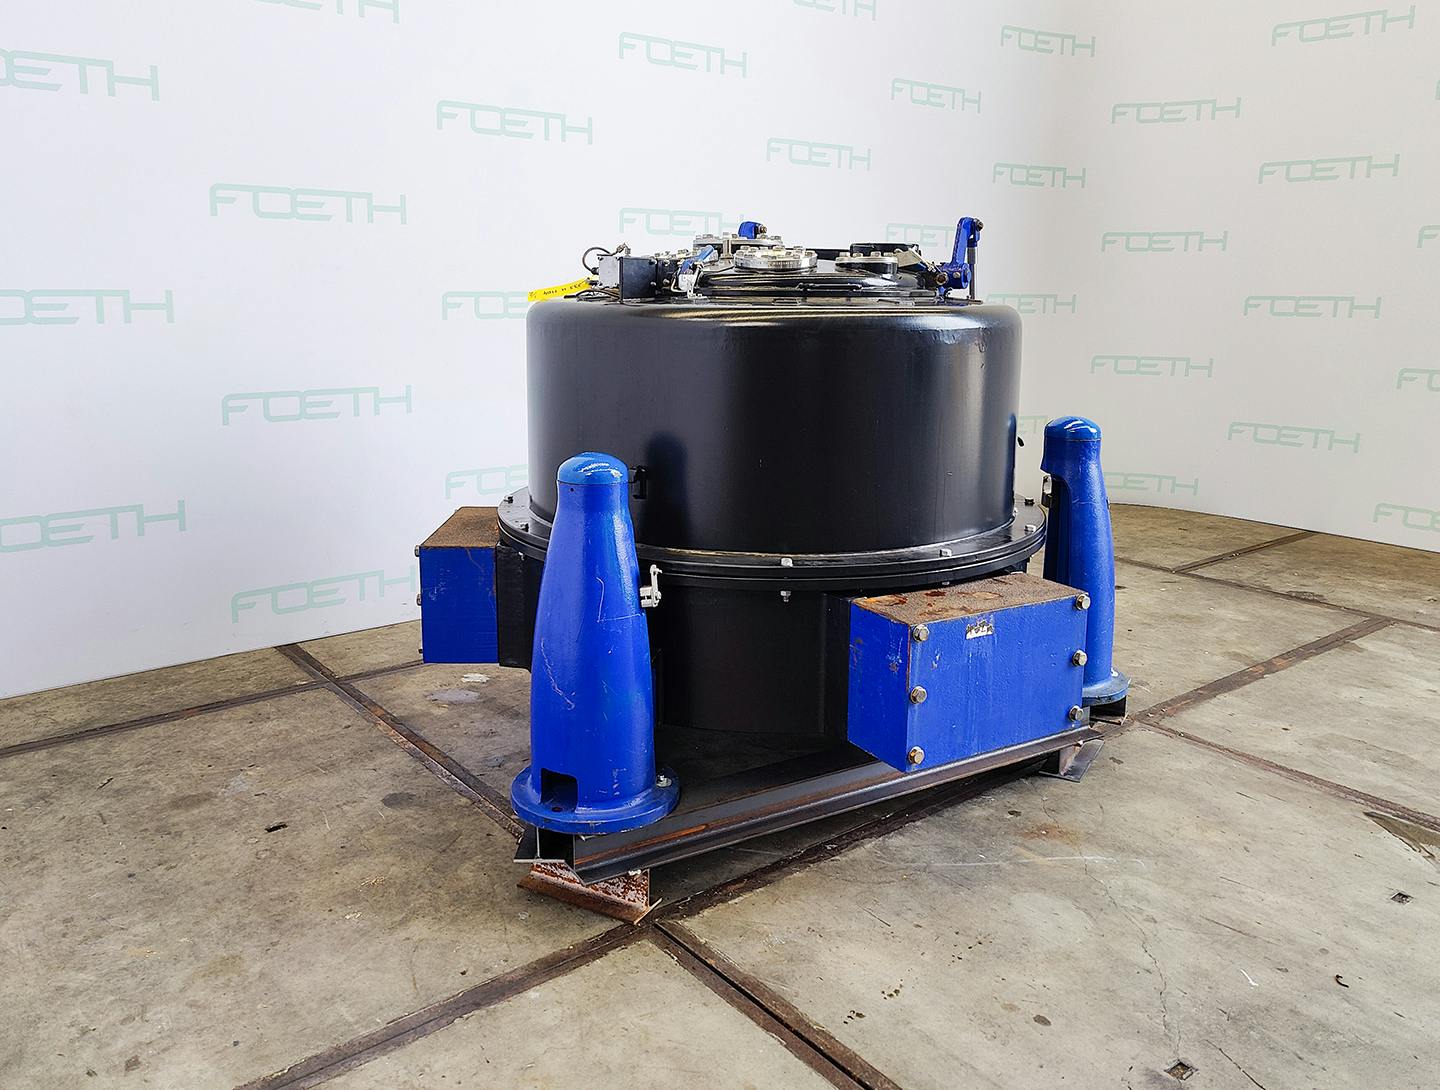 Krauss Maffei PZU 125 - Basket centrifuge - image 2